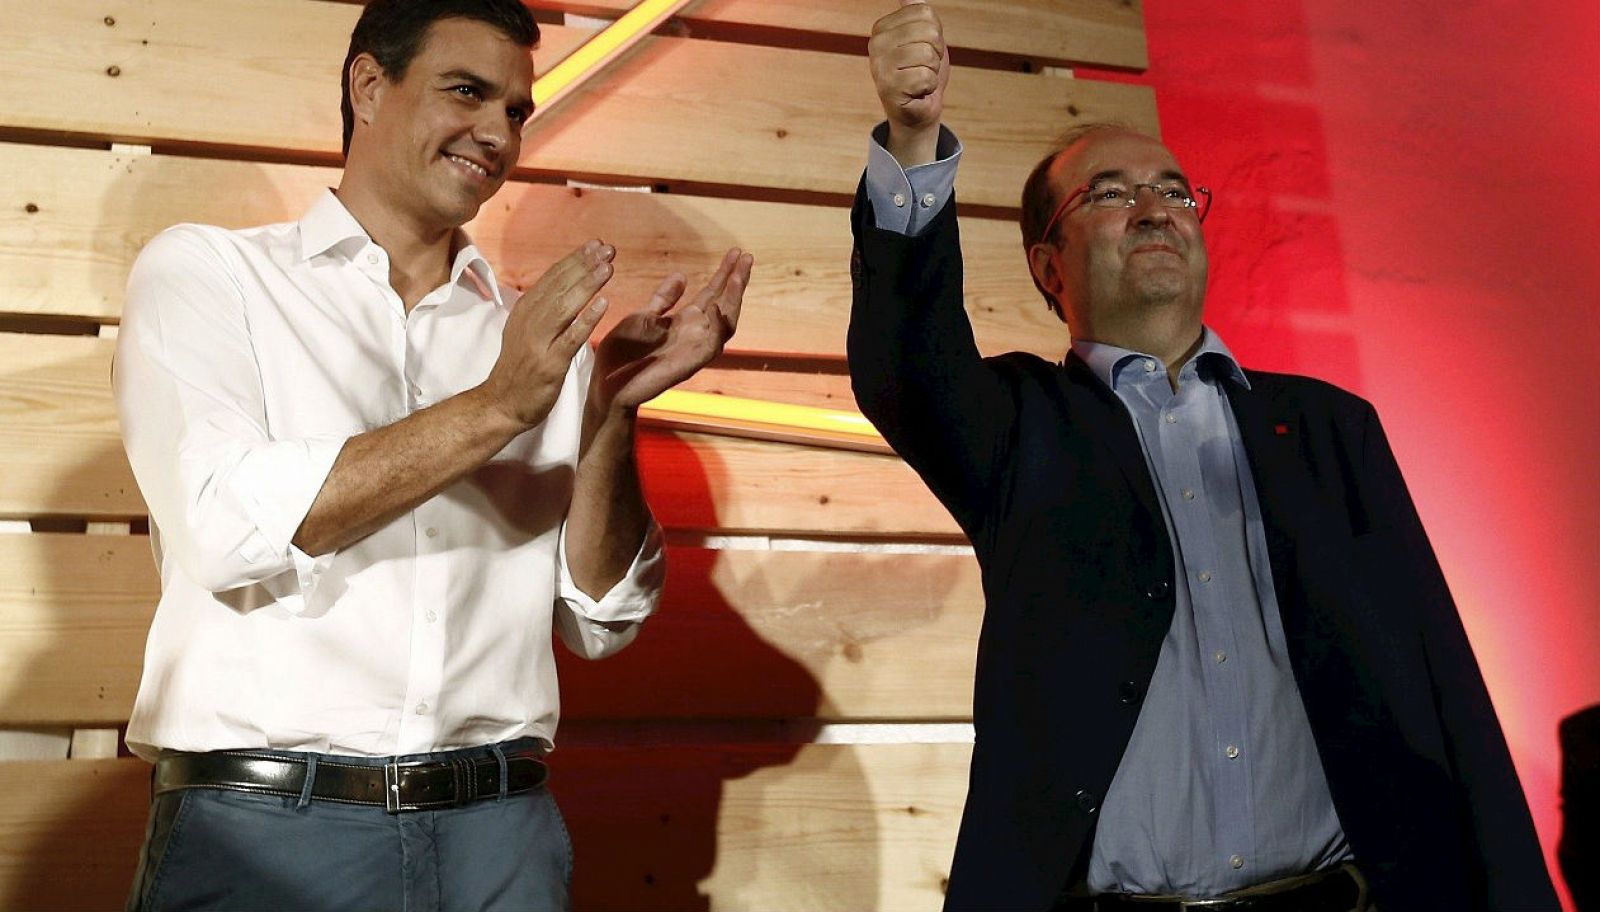 R-5 Actualidad - Elecciones catalanas 2015 - Pedro Sánchez : "El plebiscito lo han perdido...El nuevo gobierno debe coser las heridas"